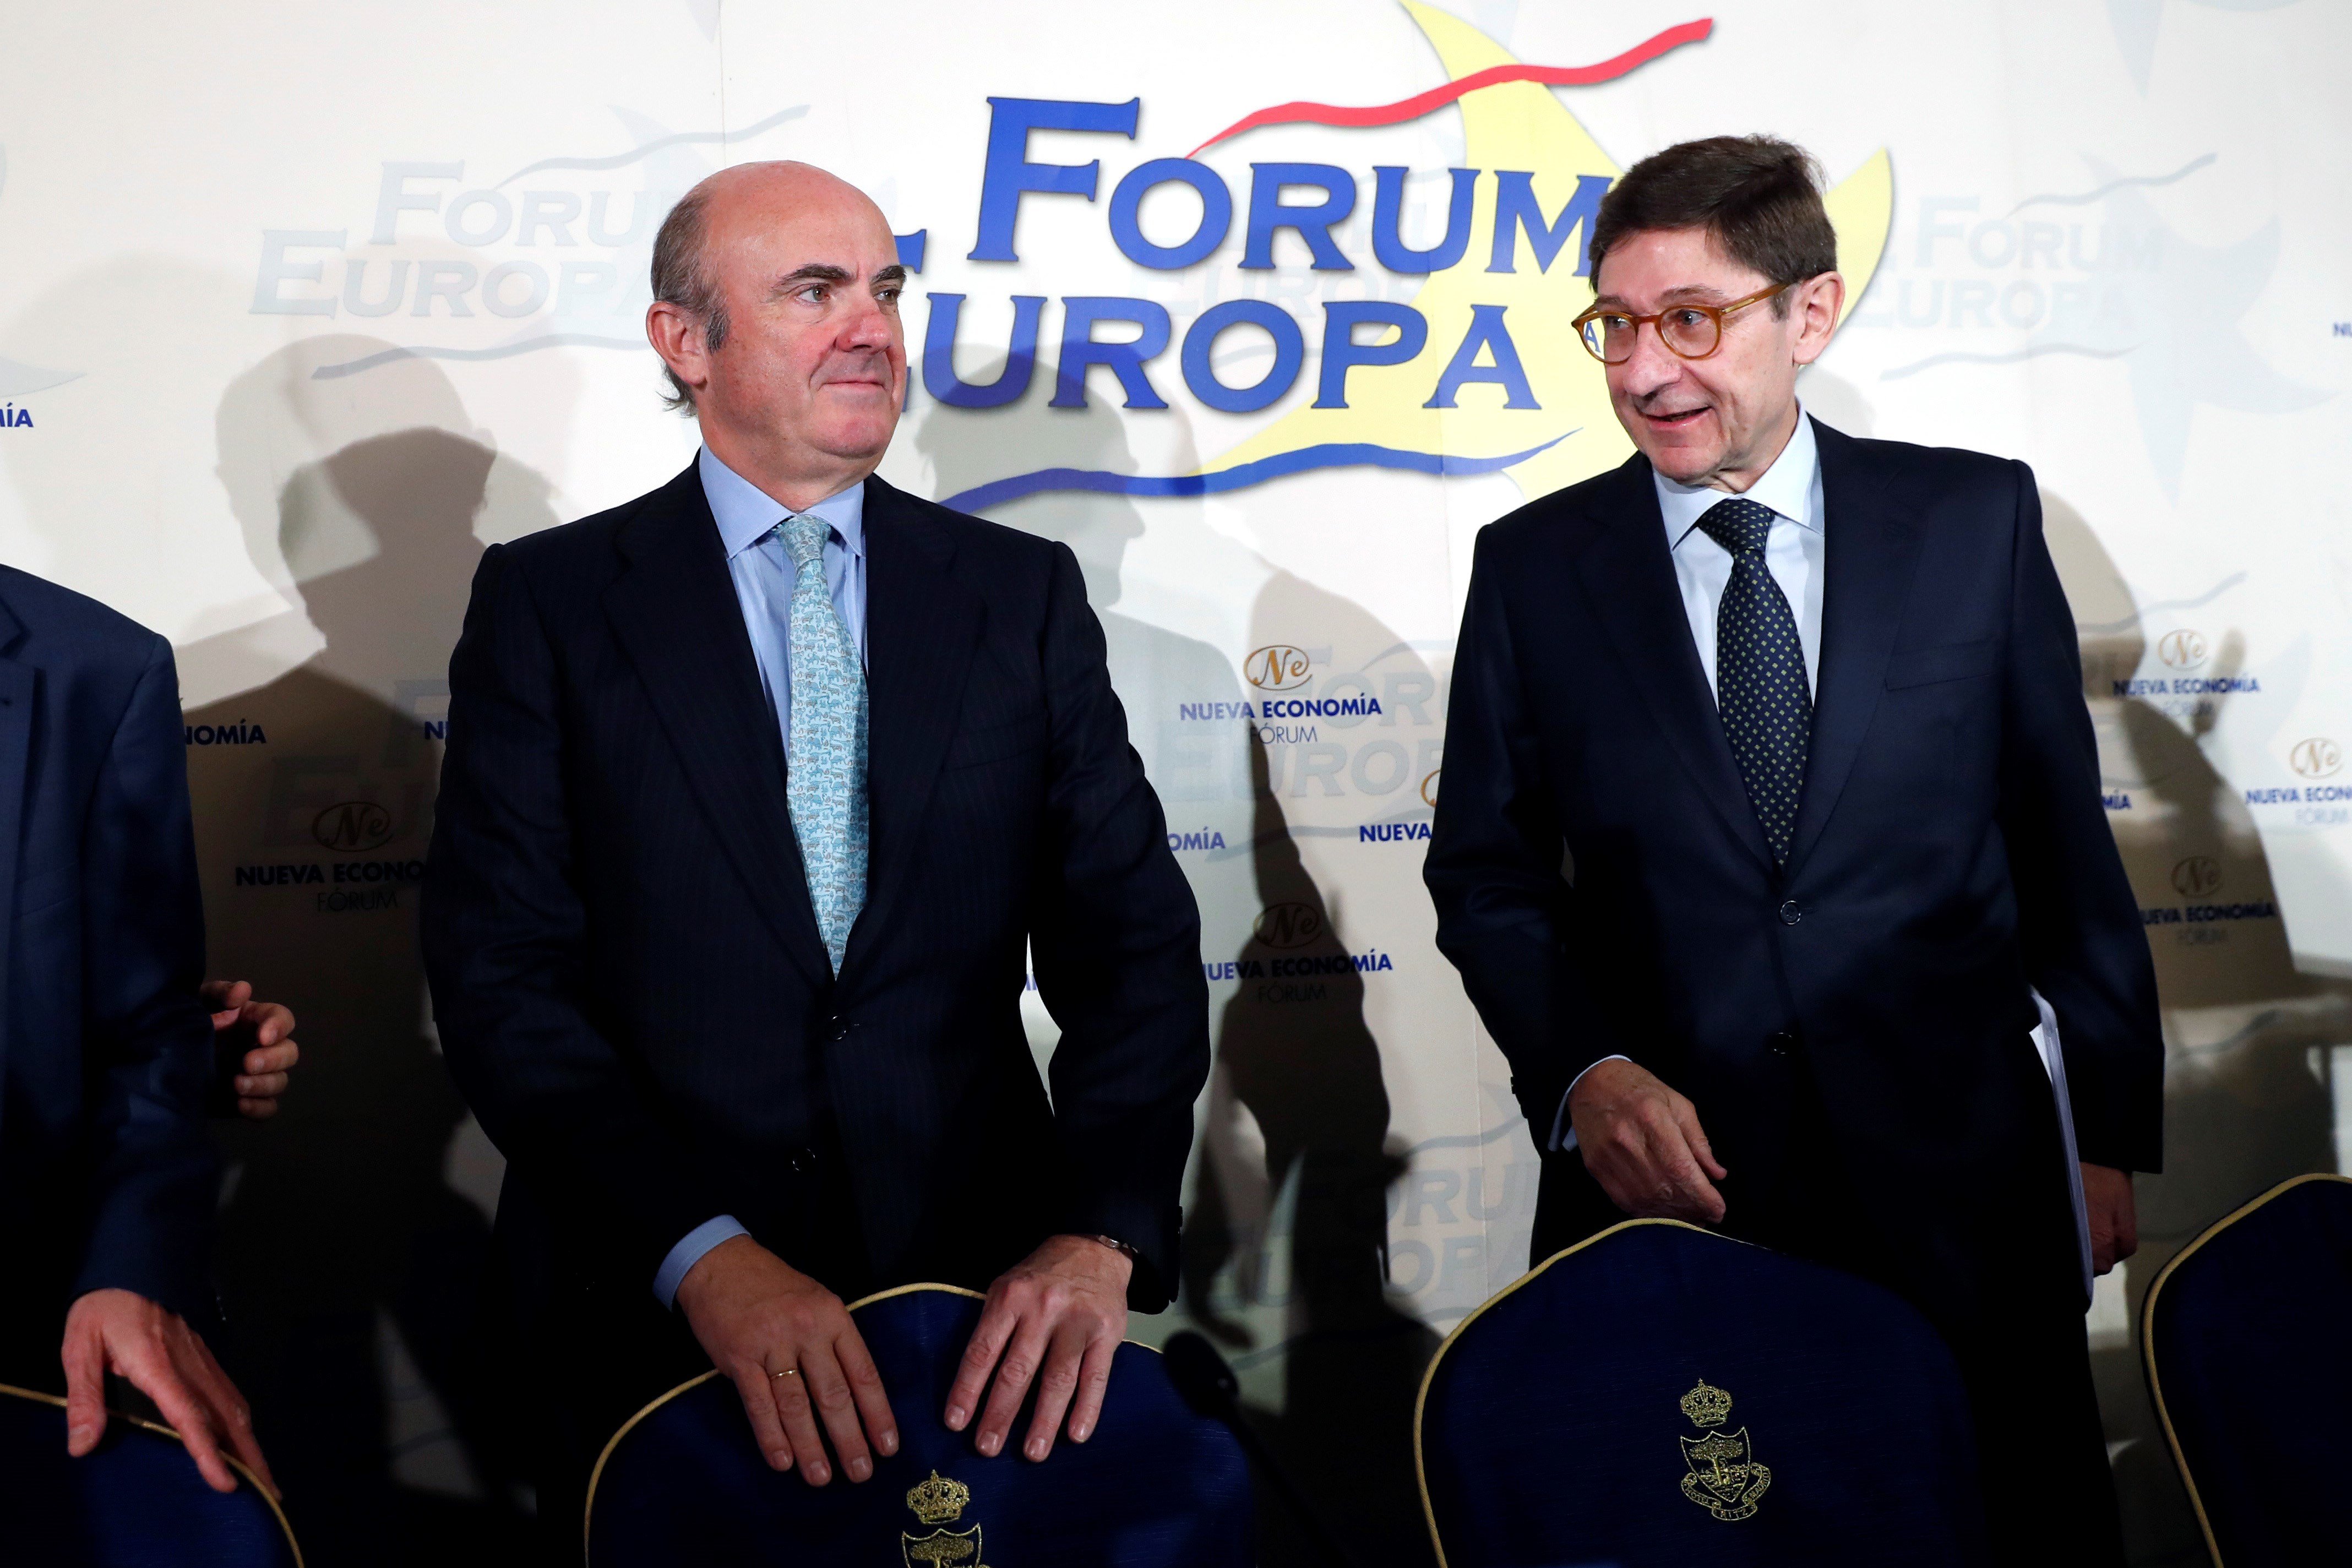 El presidente de Bankia, José Ignacio Goirigolzarri pronunció hoy una conferencia en el Forum Europa presentado por el ministro de Economía Luis de Guindos